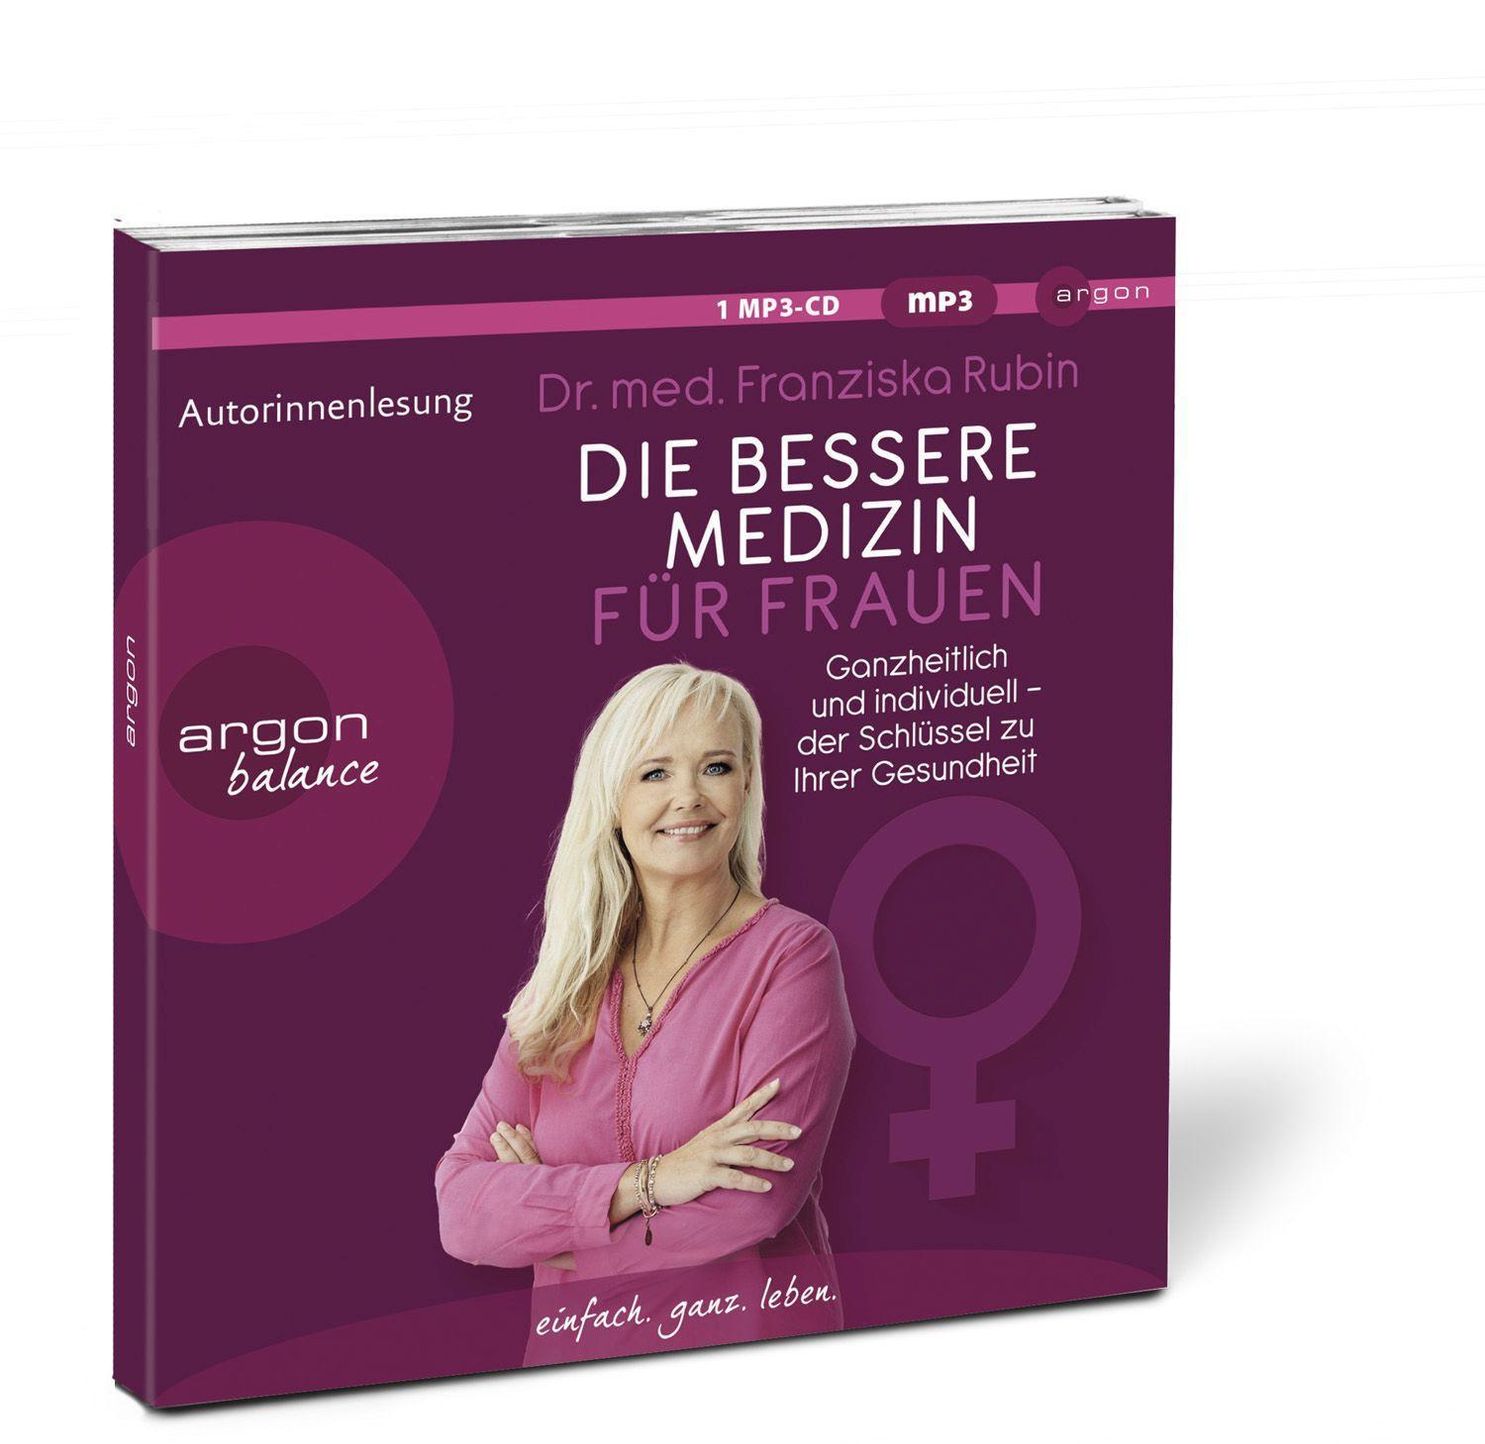 Die bessere Medizin für Frauen, 1 Audio-CD, 1 MP3 online kaufen - Orbisana